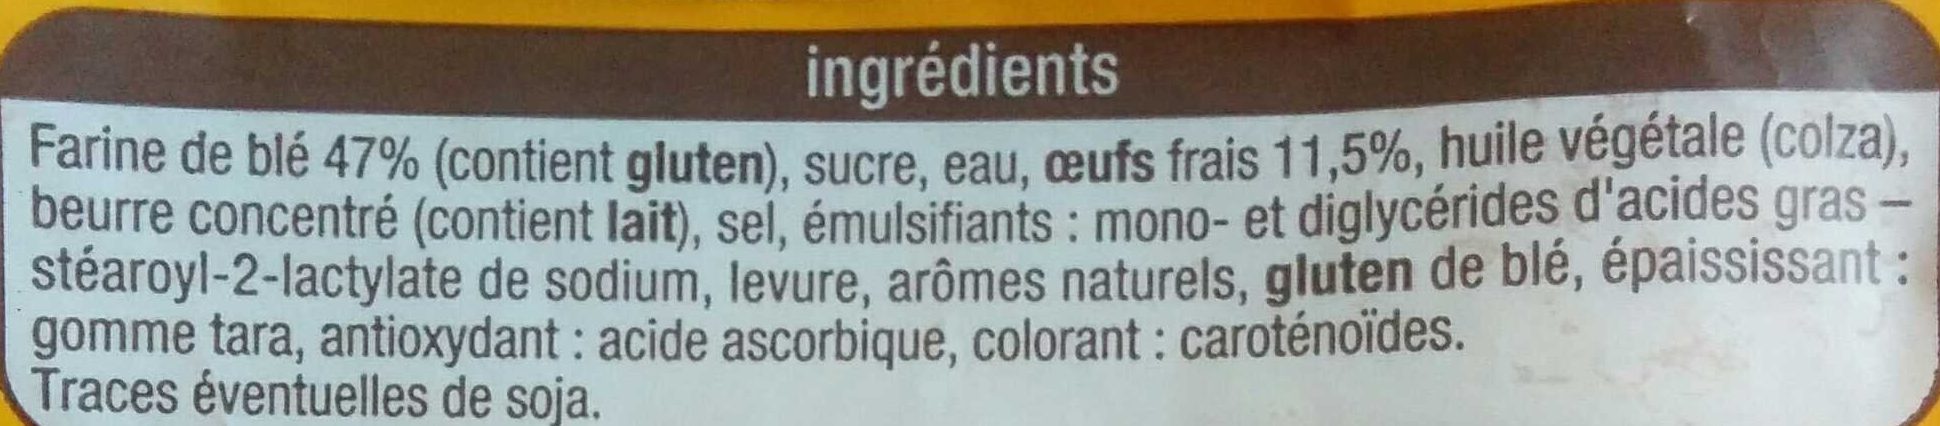 Brioche tranchée aux oeufs frais - Ingredients - fr